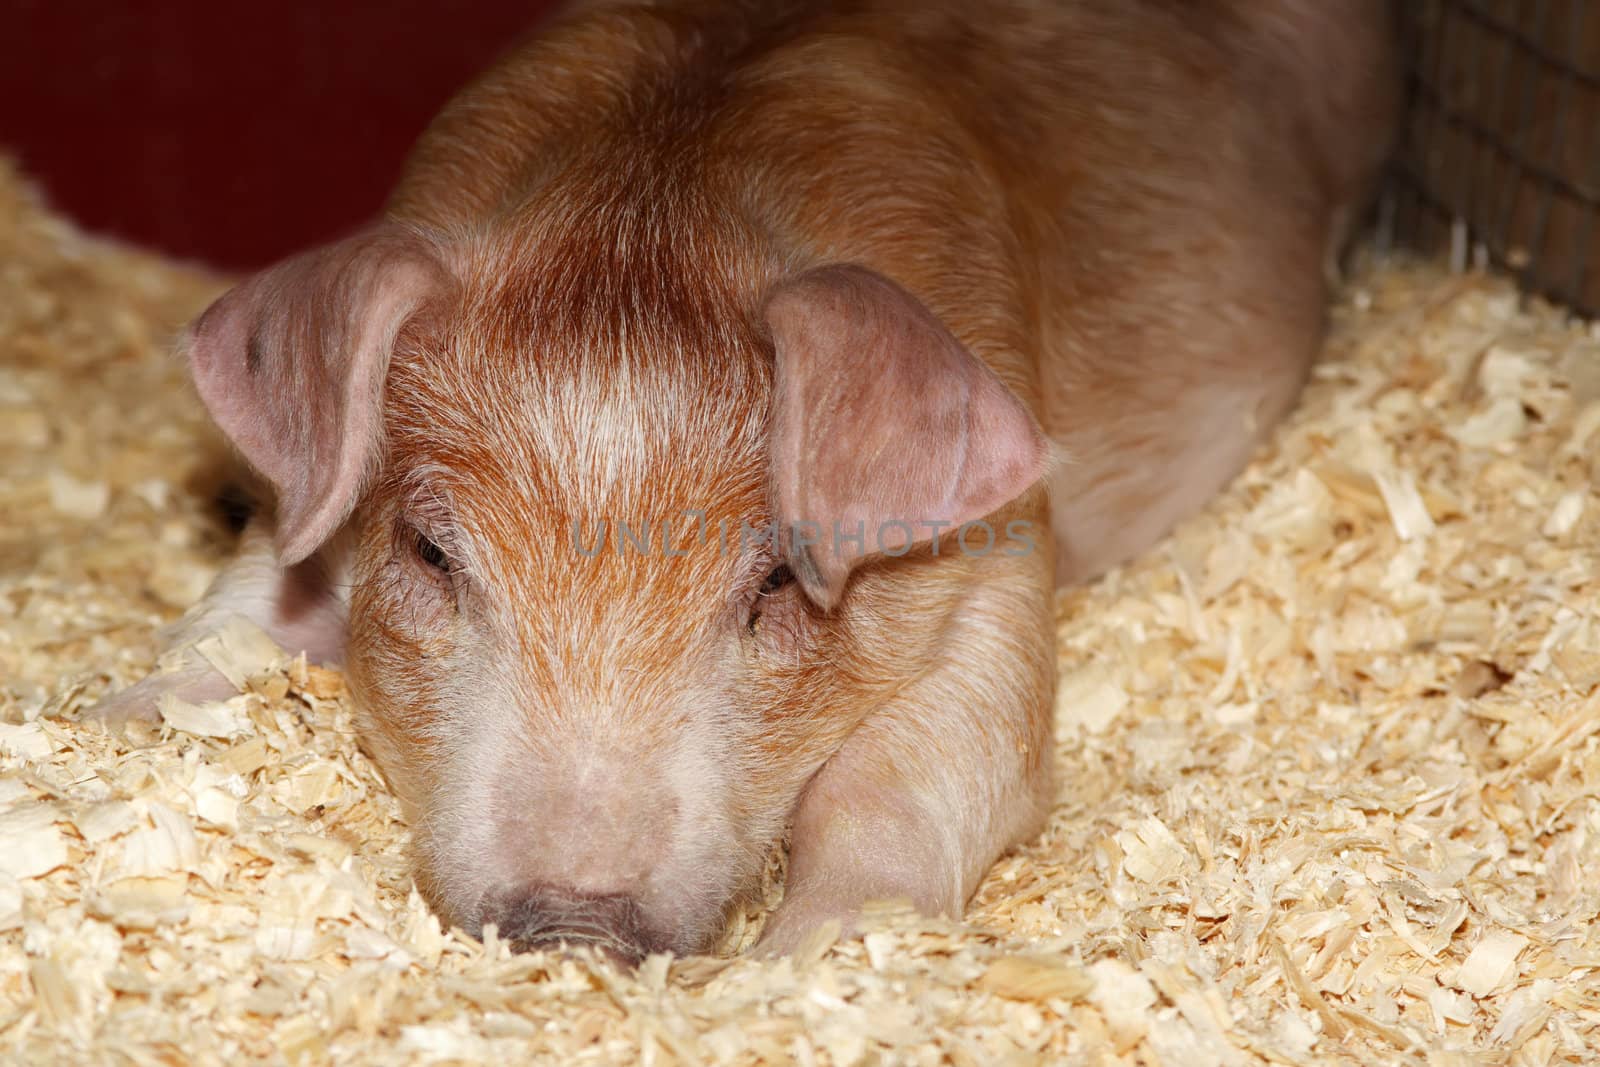 closeup portrait of a young pig